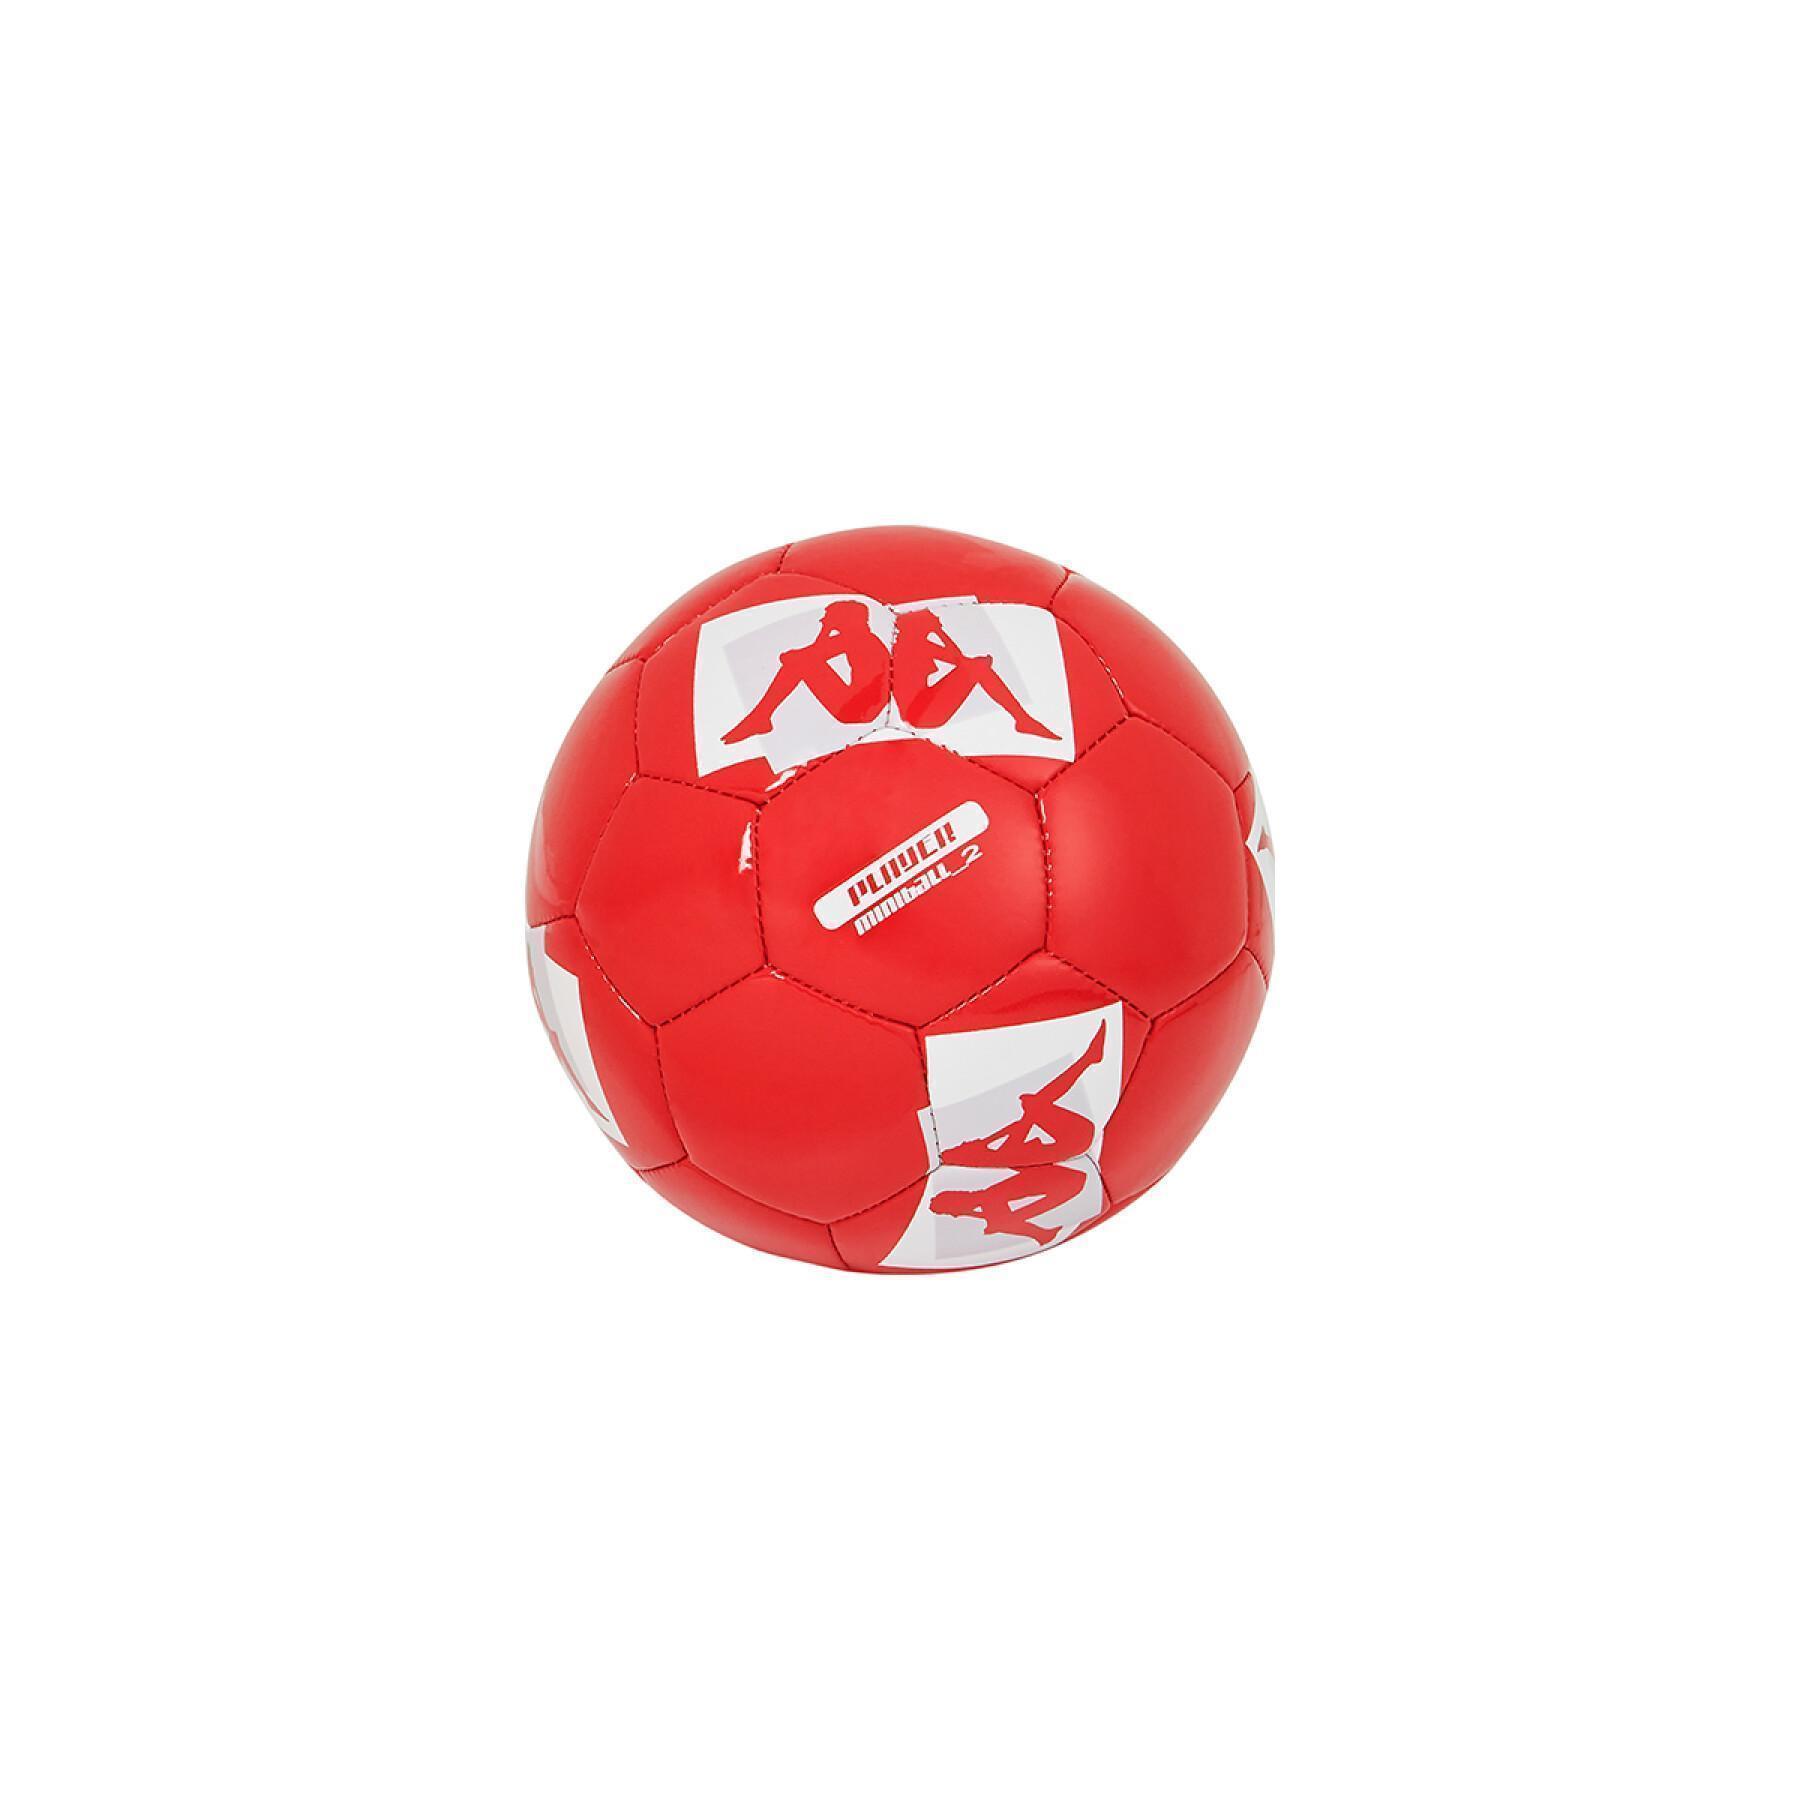 Balloon AS Monaco 2020/21 player miniball